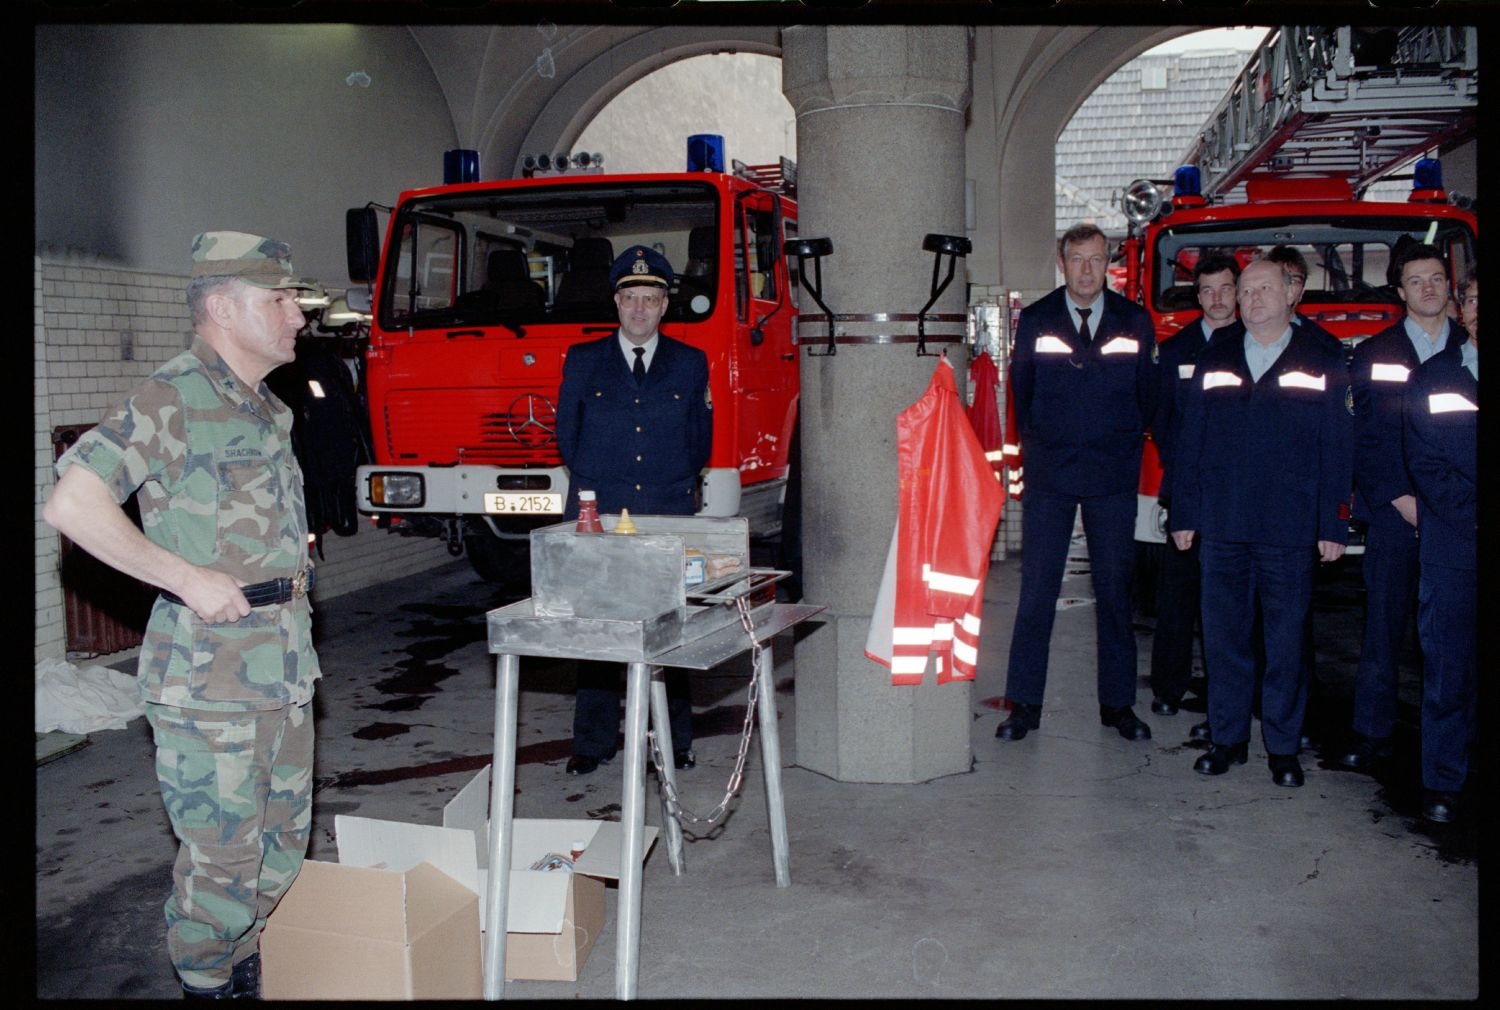 Fotografie: Auszeichnung der West-Berliner Feuerwachen 310 und 320 für 30 Jahre Diensttätigkeit für die U.S. Army in Berlin (AlliiertenMuseum/U.S. Army Photograph Public Domain Mark)